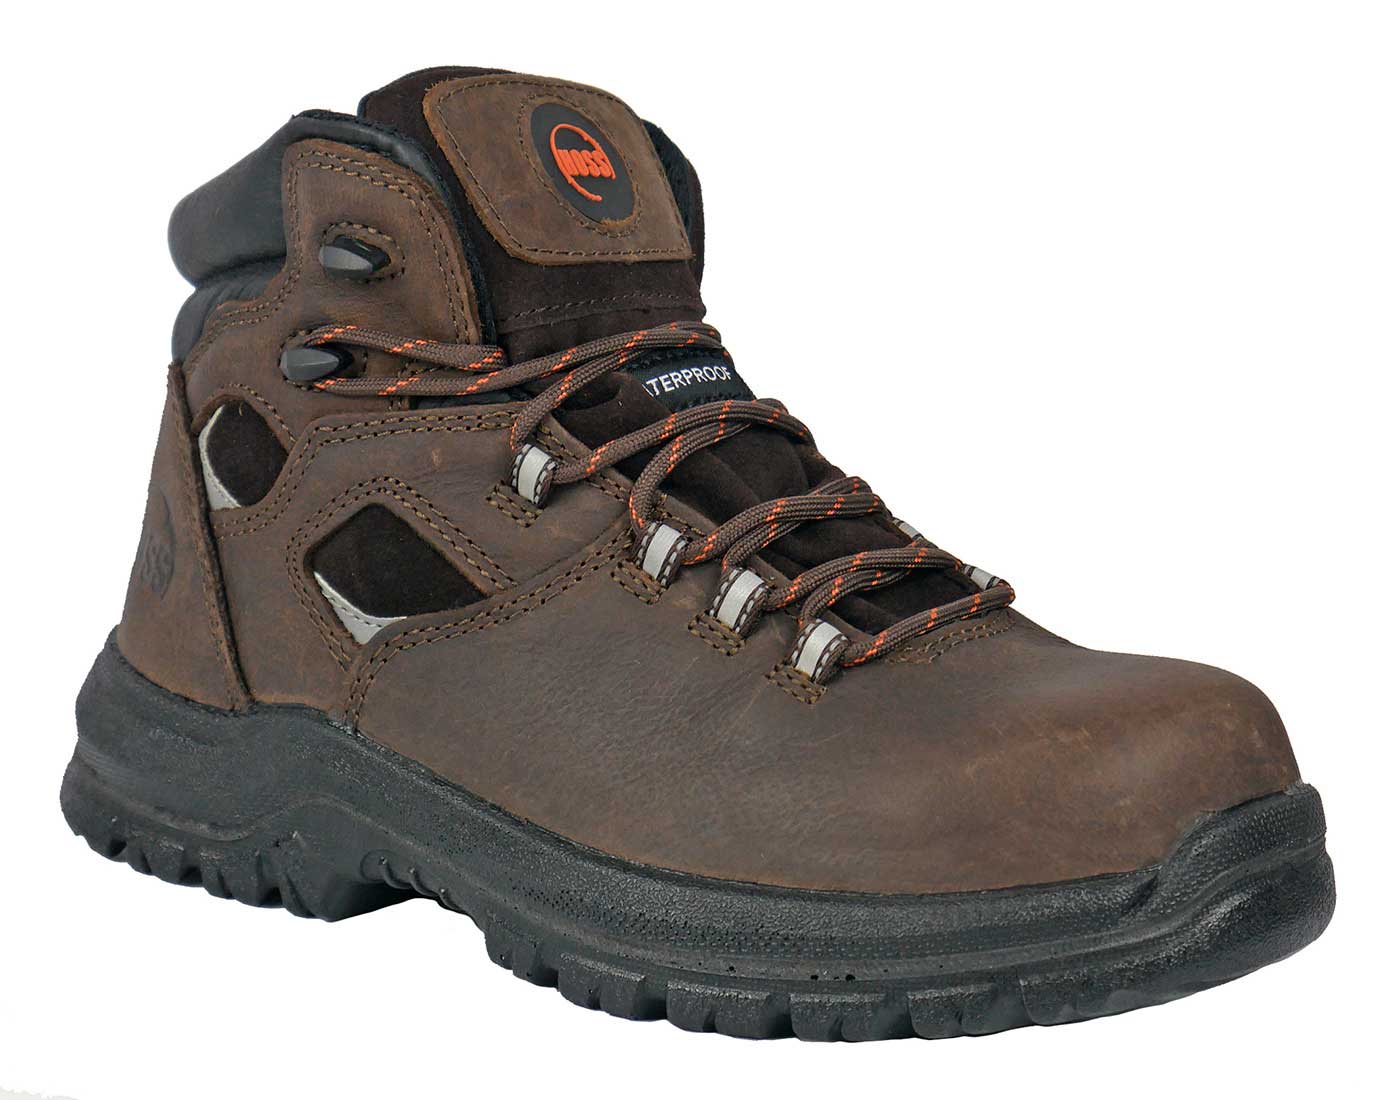 Hoss Boots 60416 Lorne Men's 6 Waterproof Composite Toe Work & Hiking Boot - Extra Depth